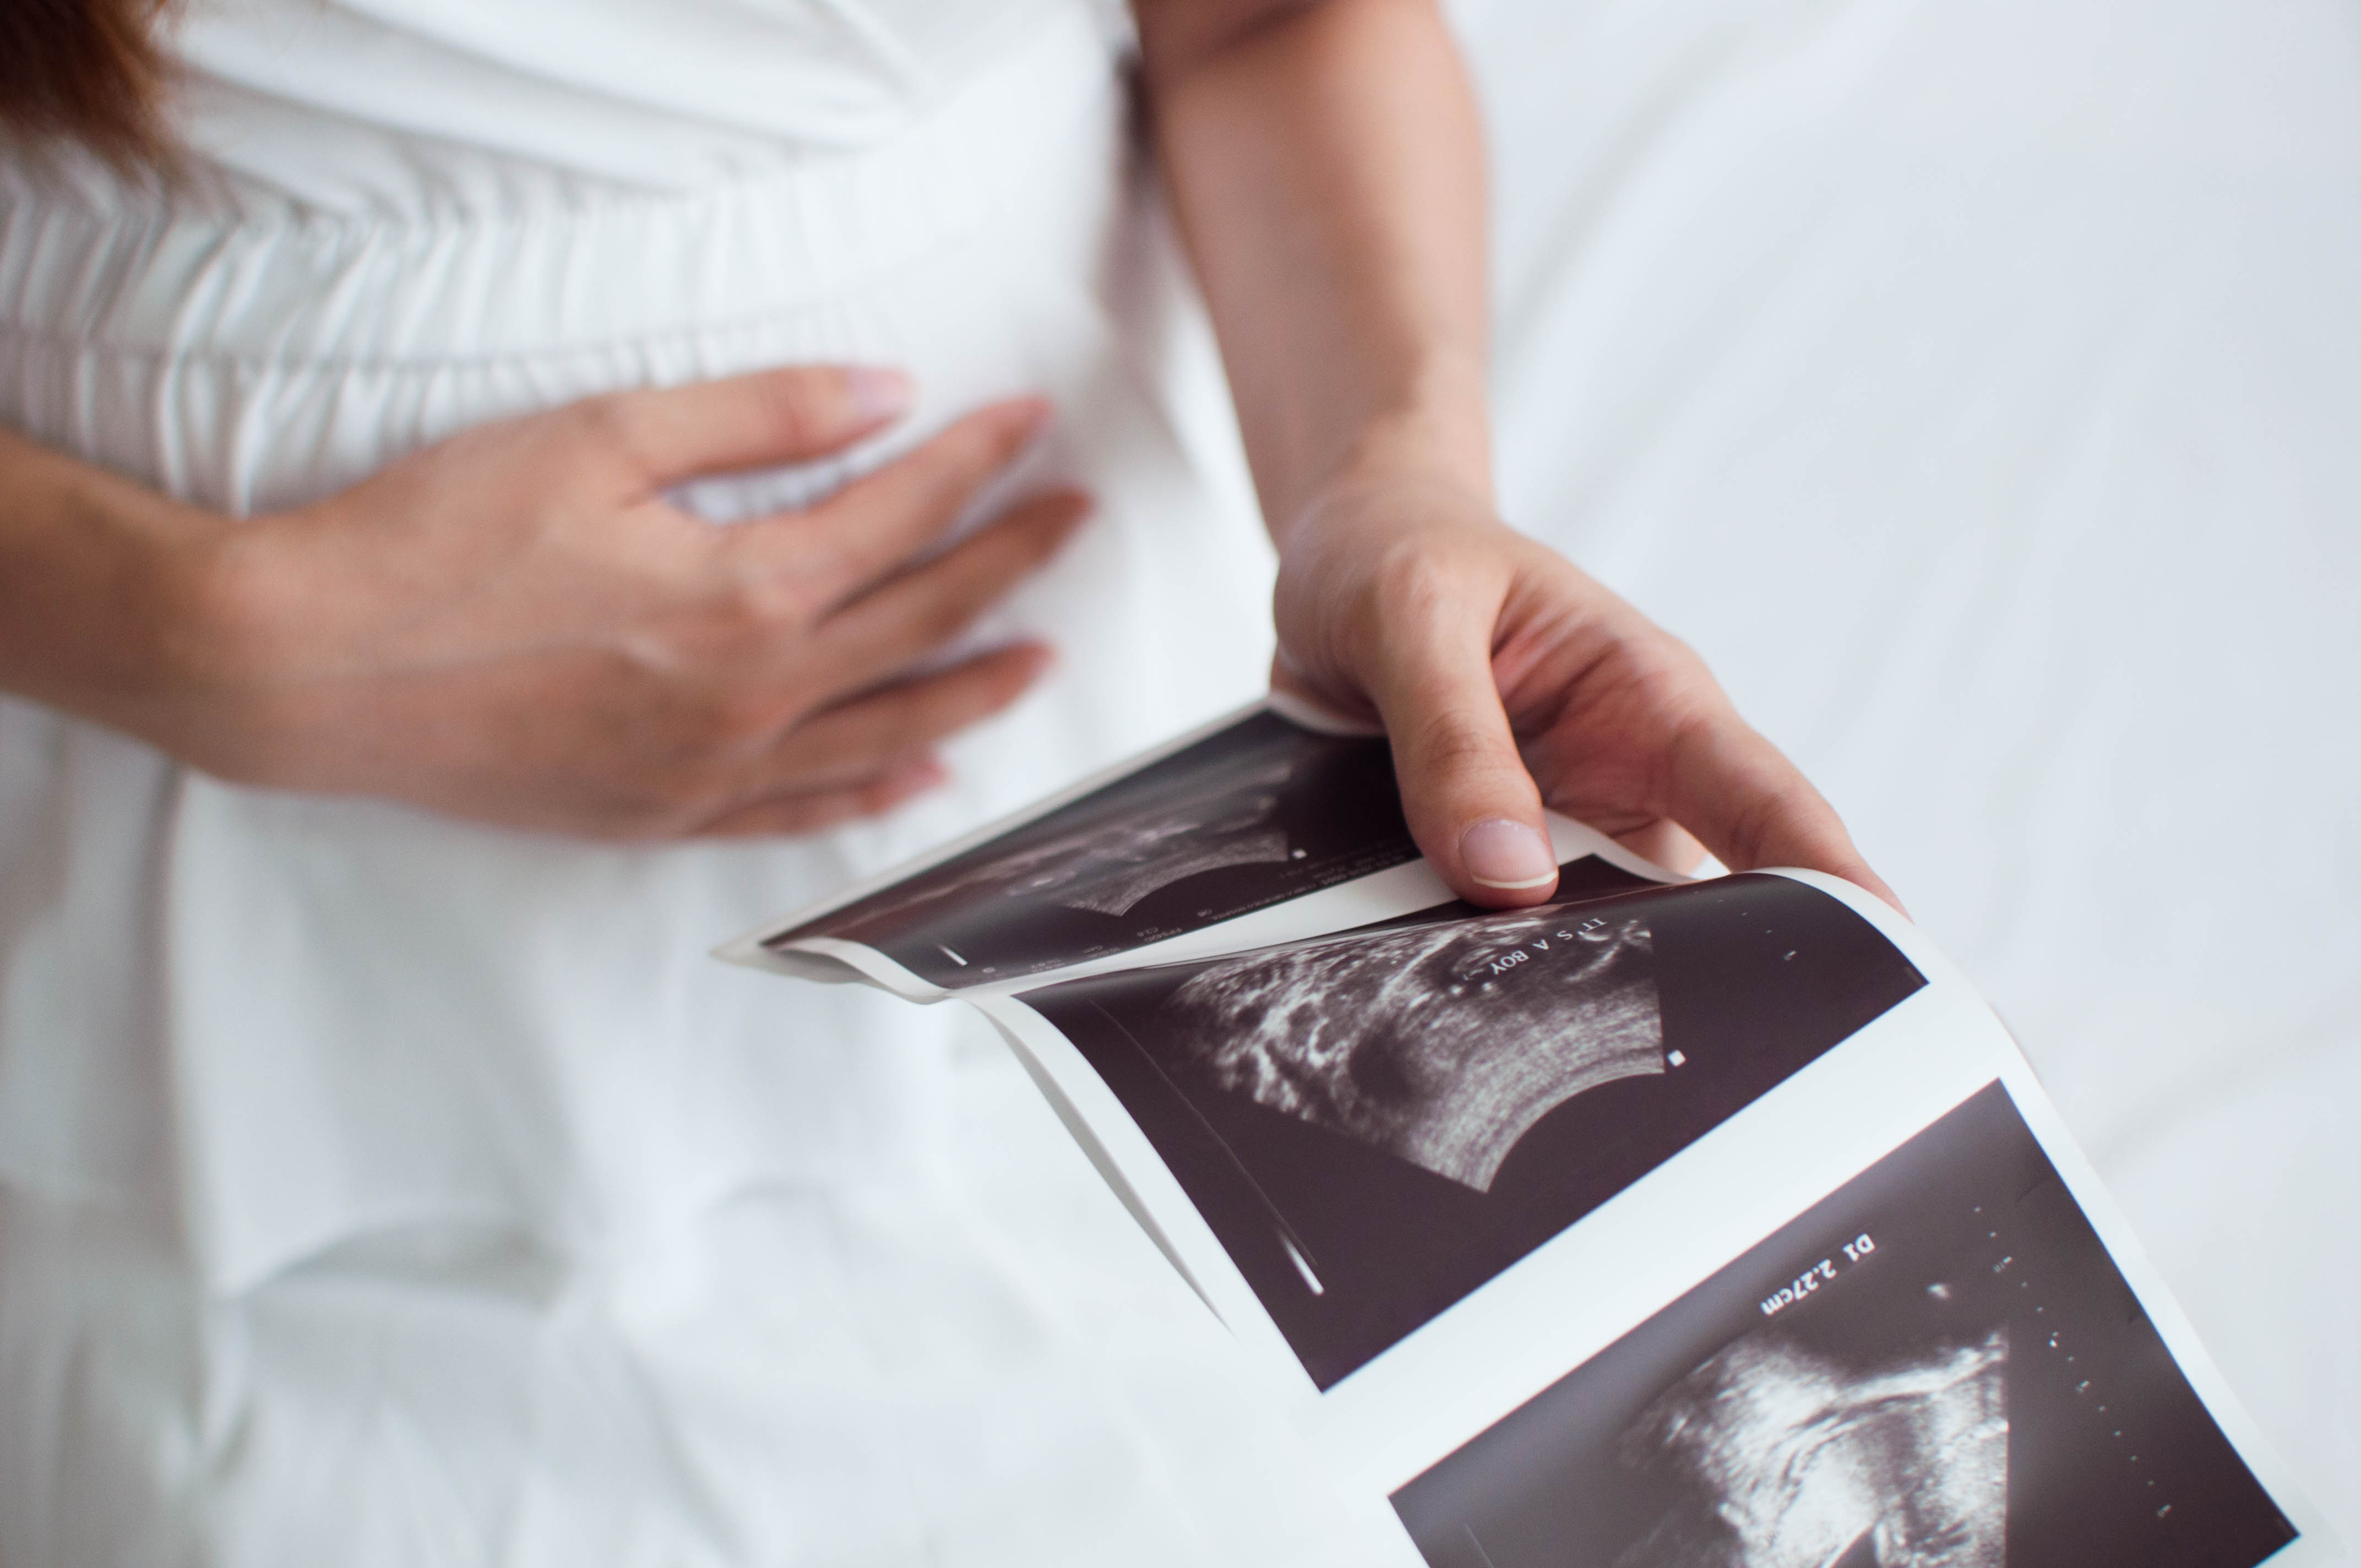 Cuidado na gestação: Riscos de gravidez ectópica saiba os sinais